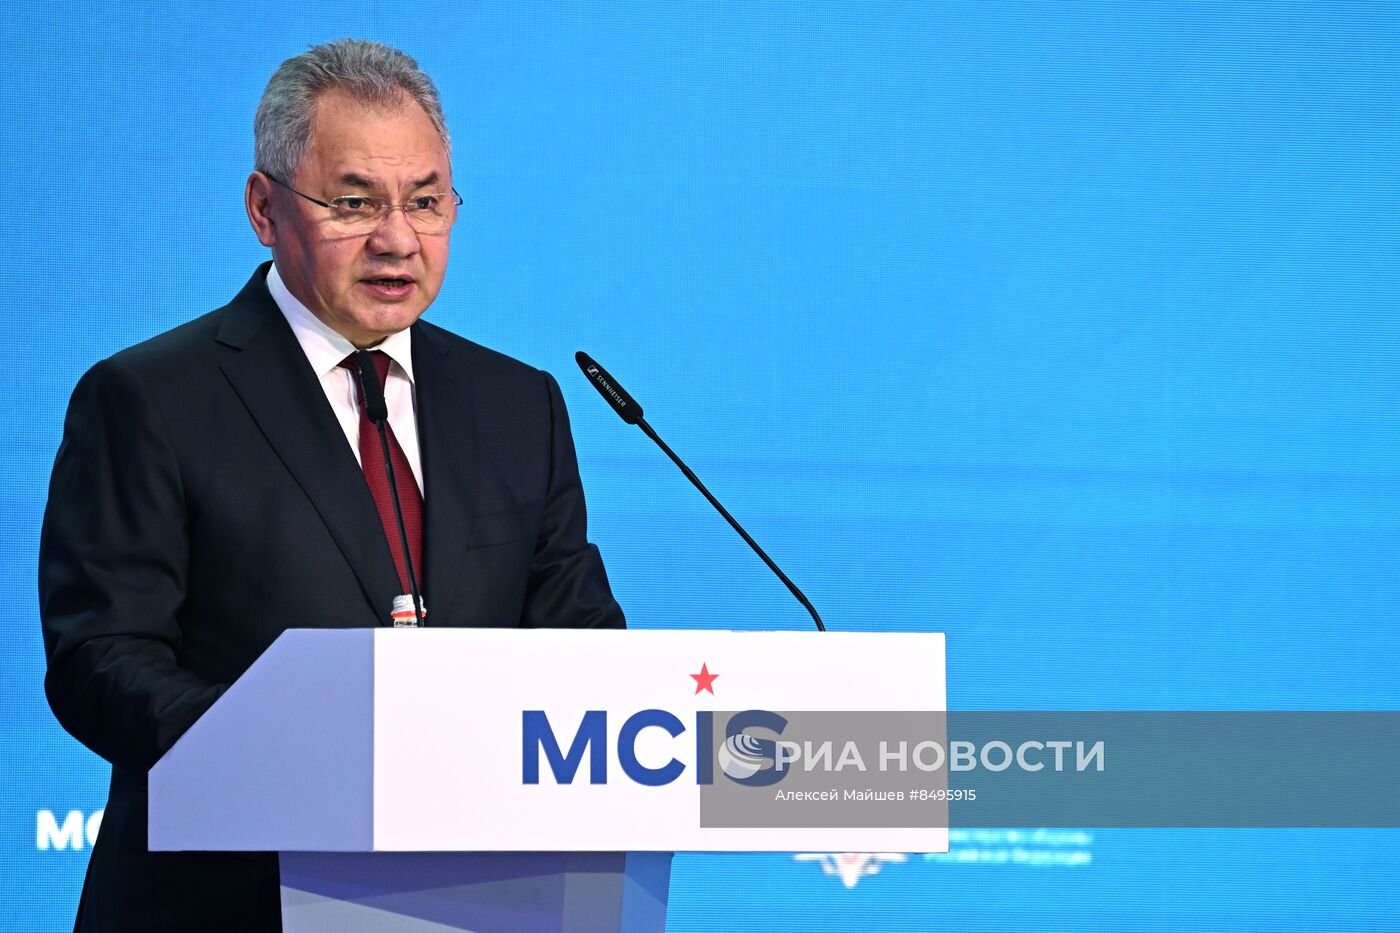 XI Московская конференция по международной безопасности